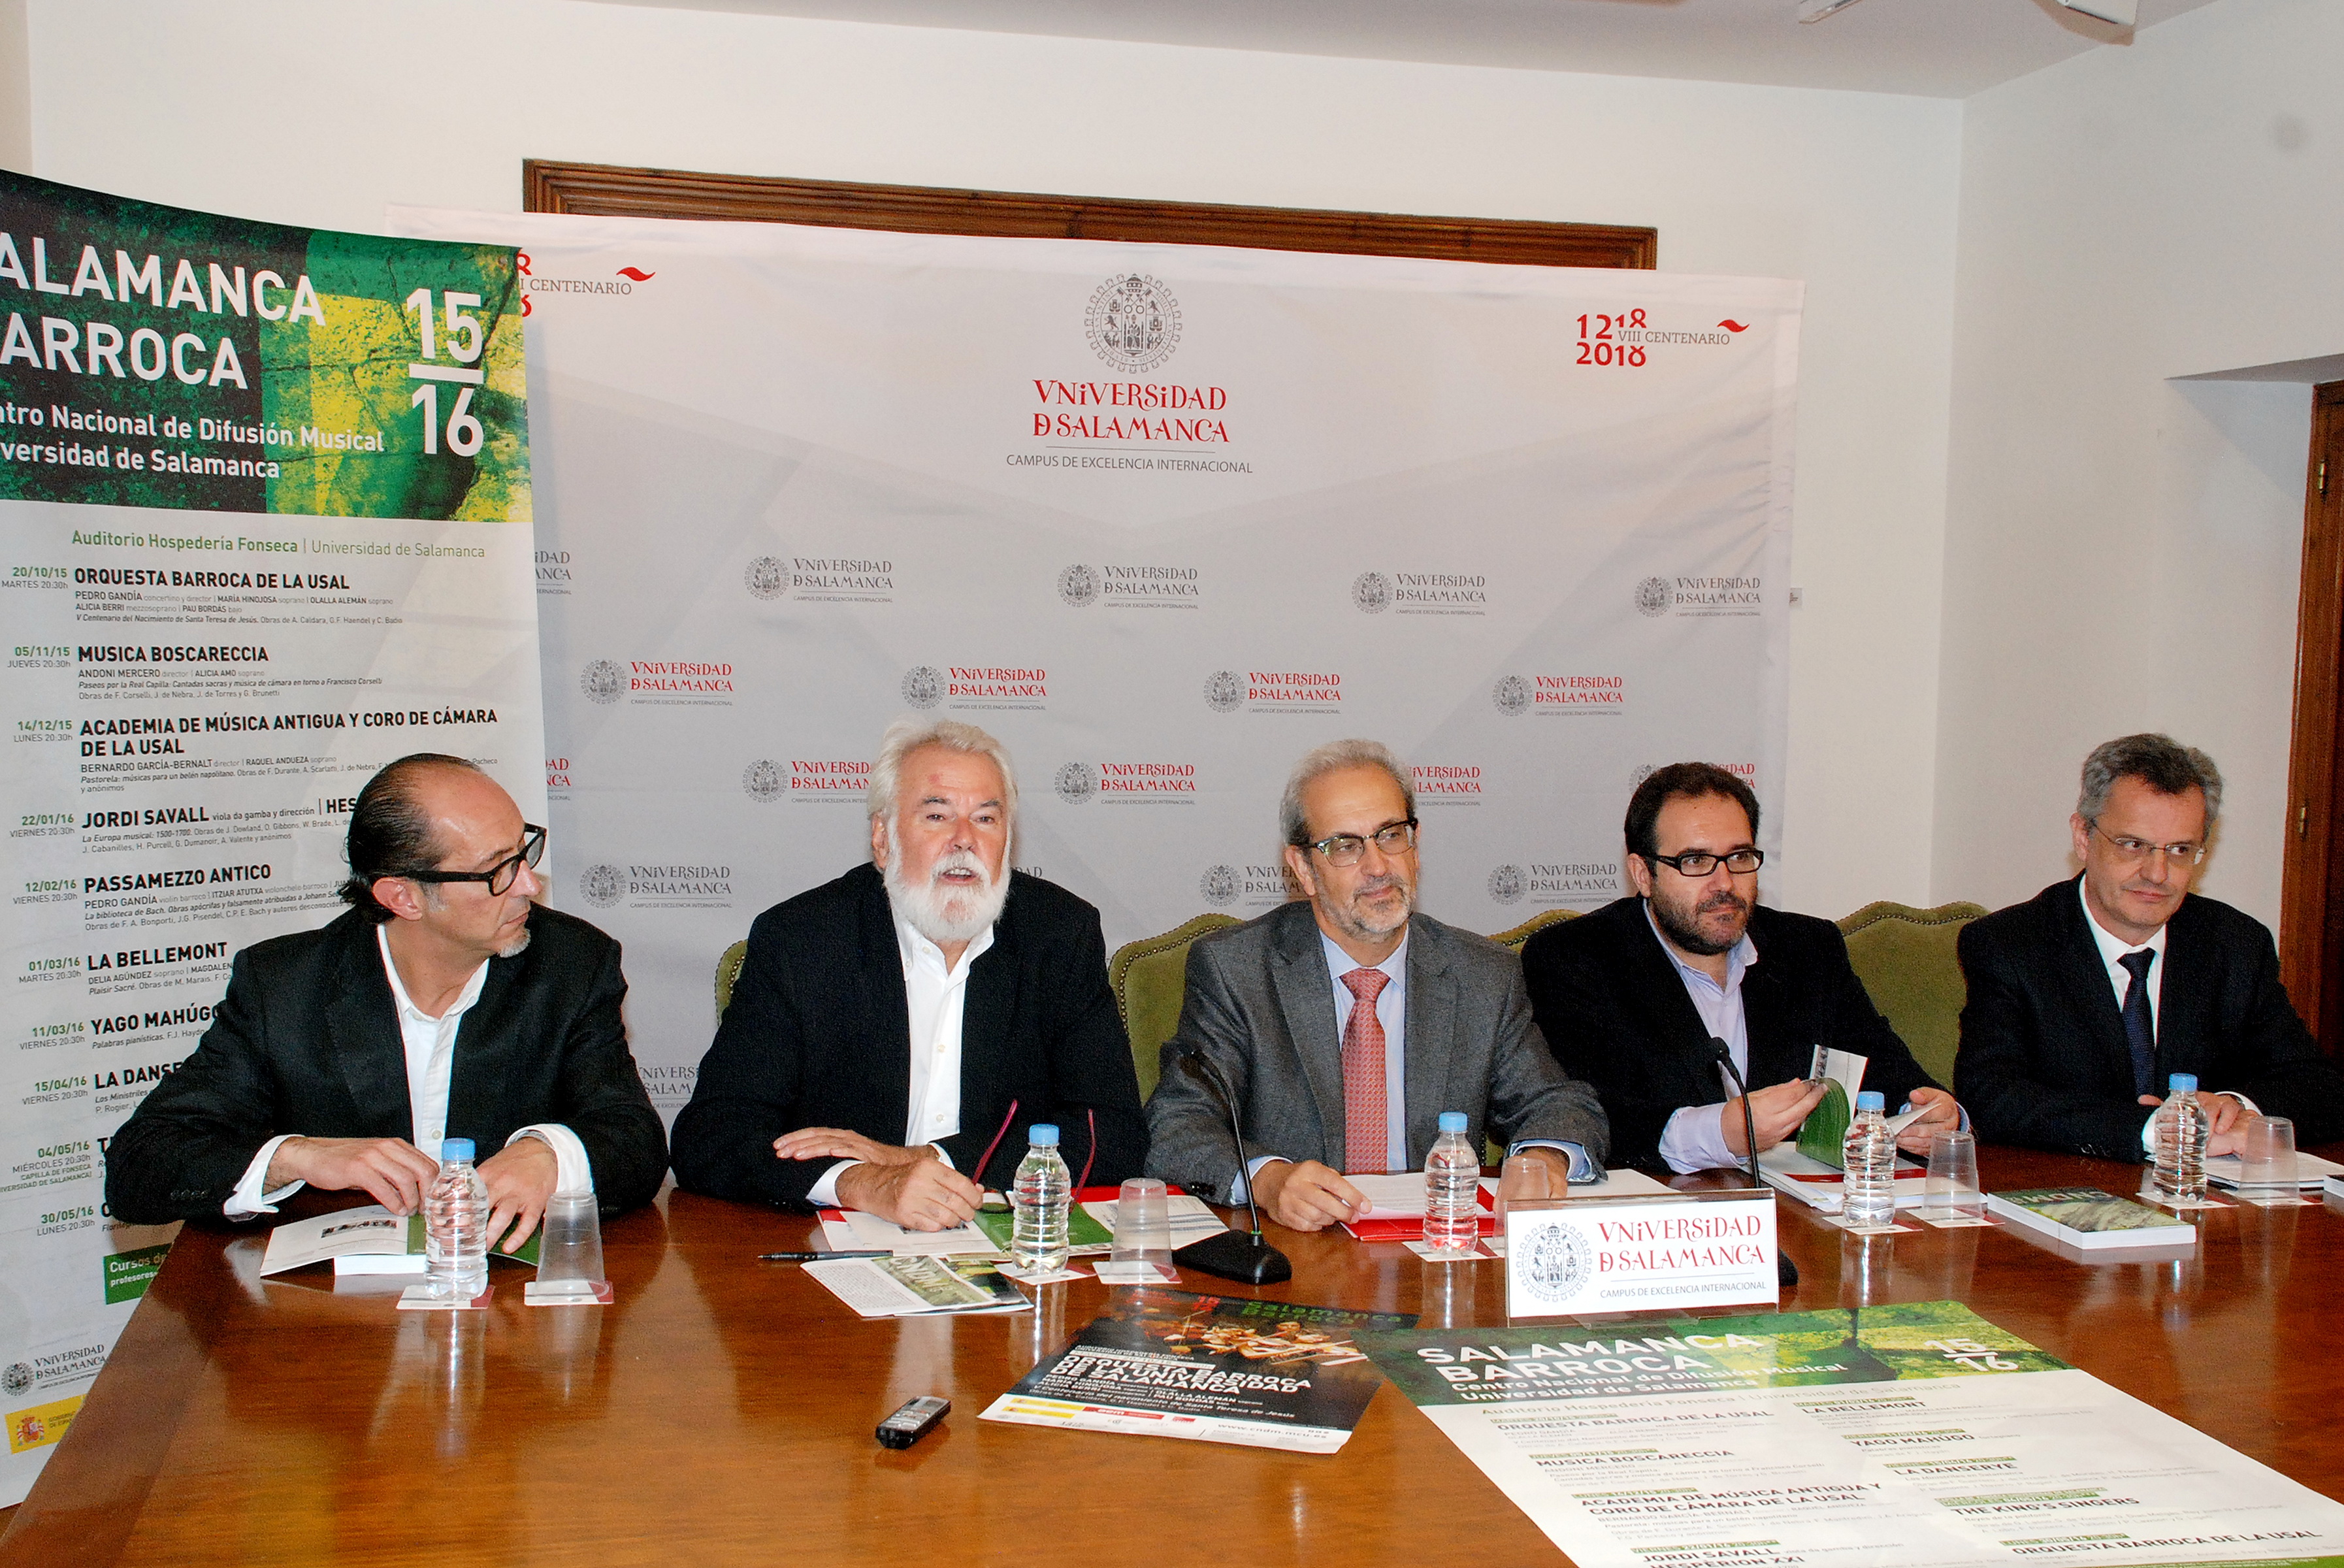 El CNDM y la Universidad de Salamanca presentan la tercera edición del ciclo ‘Salamanca Barroca’